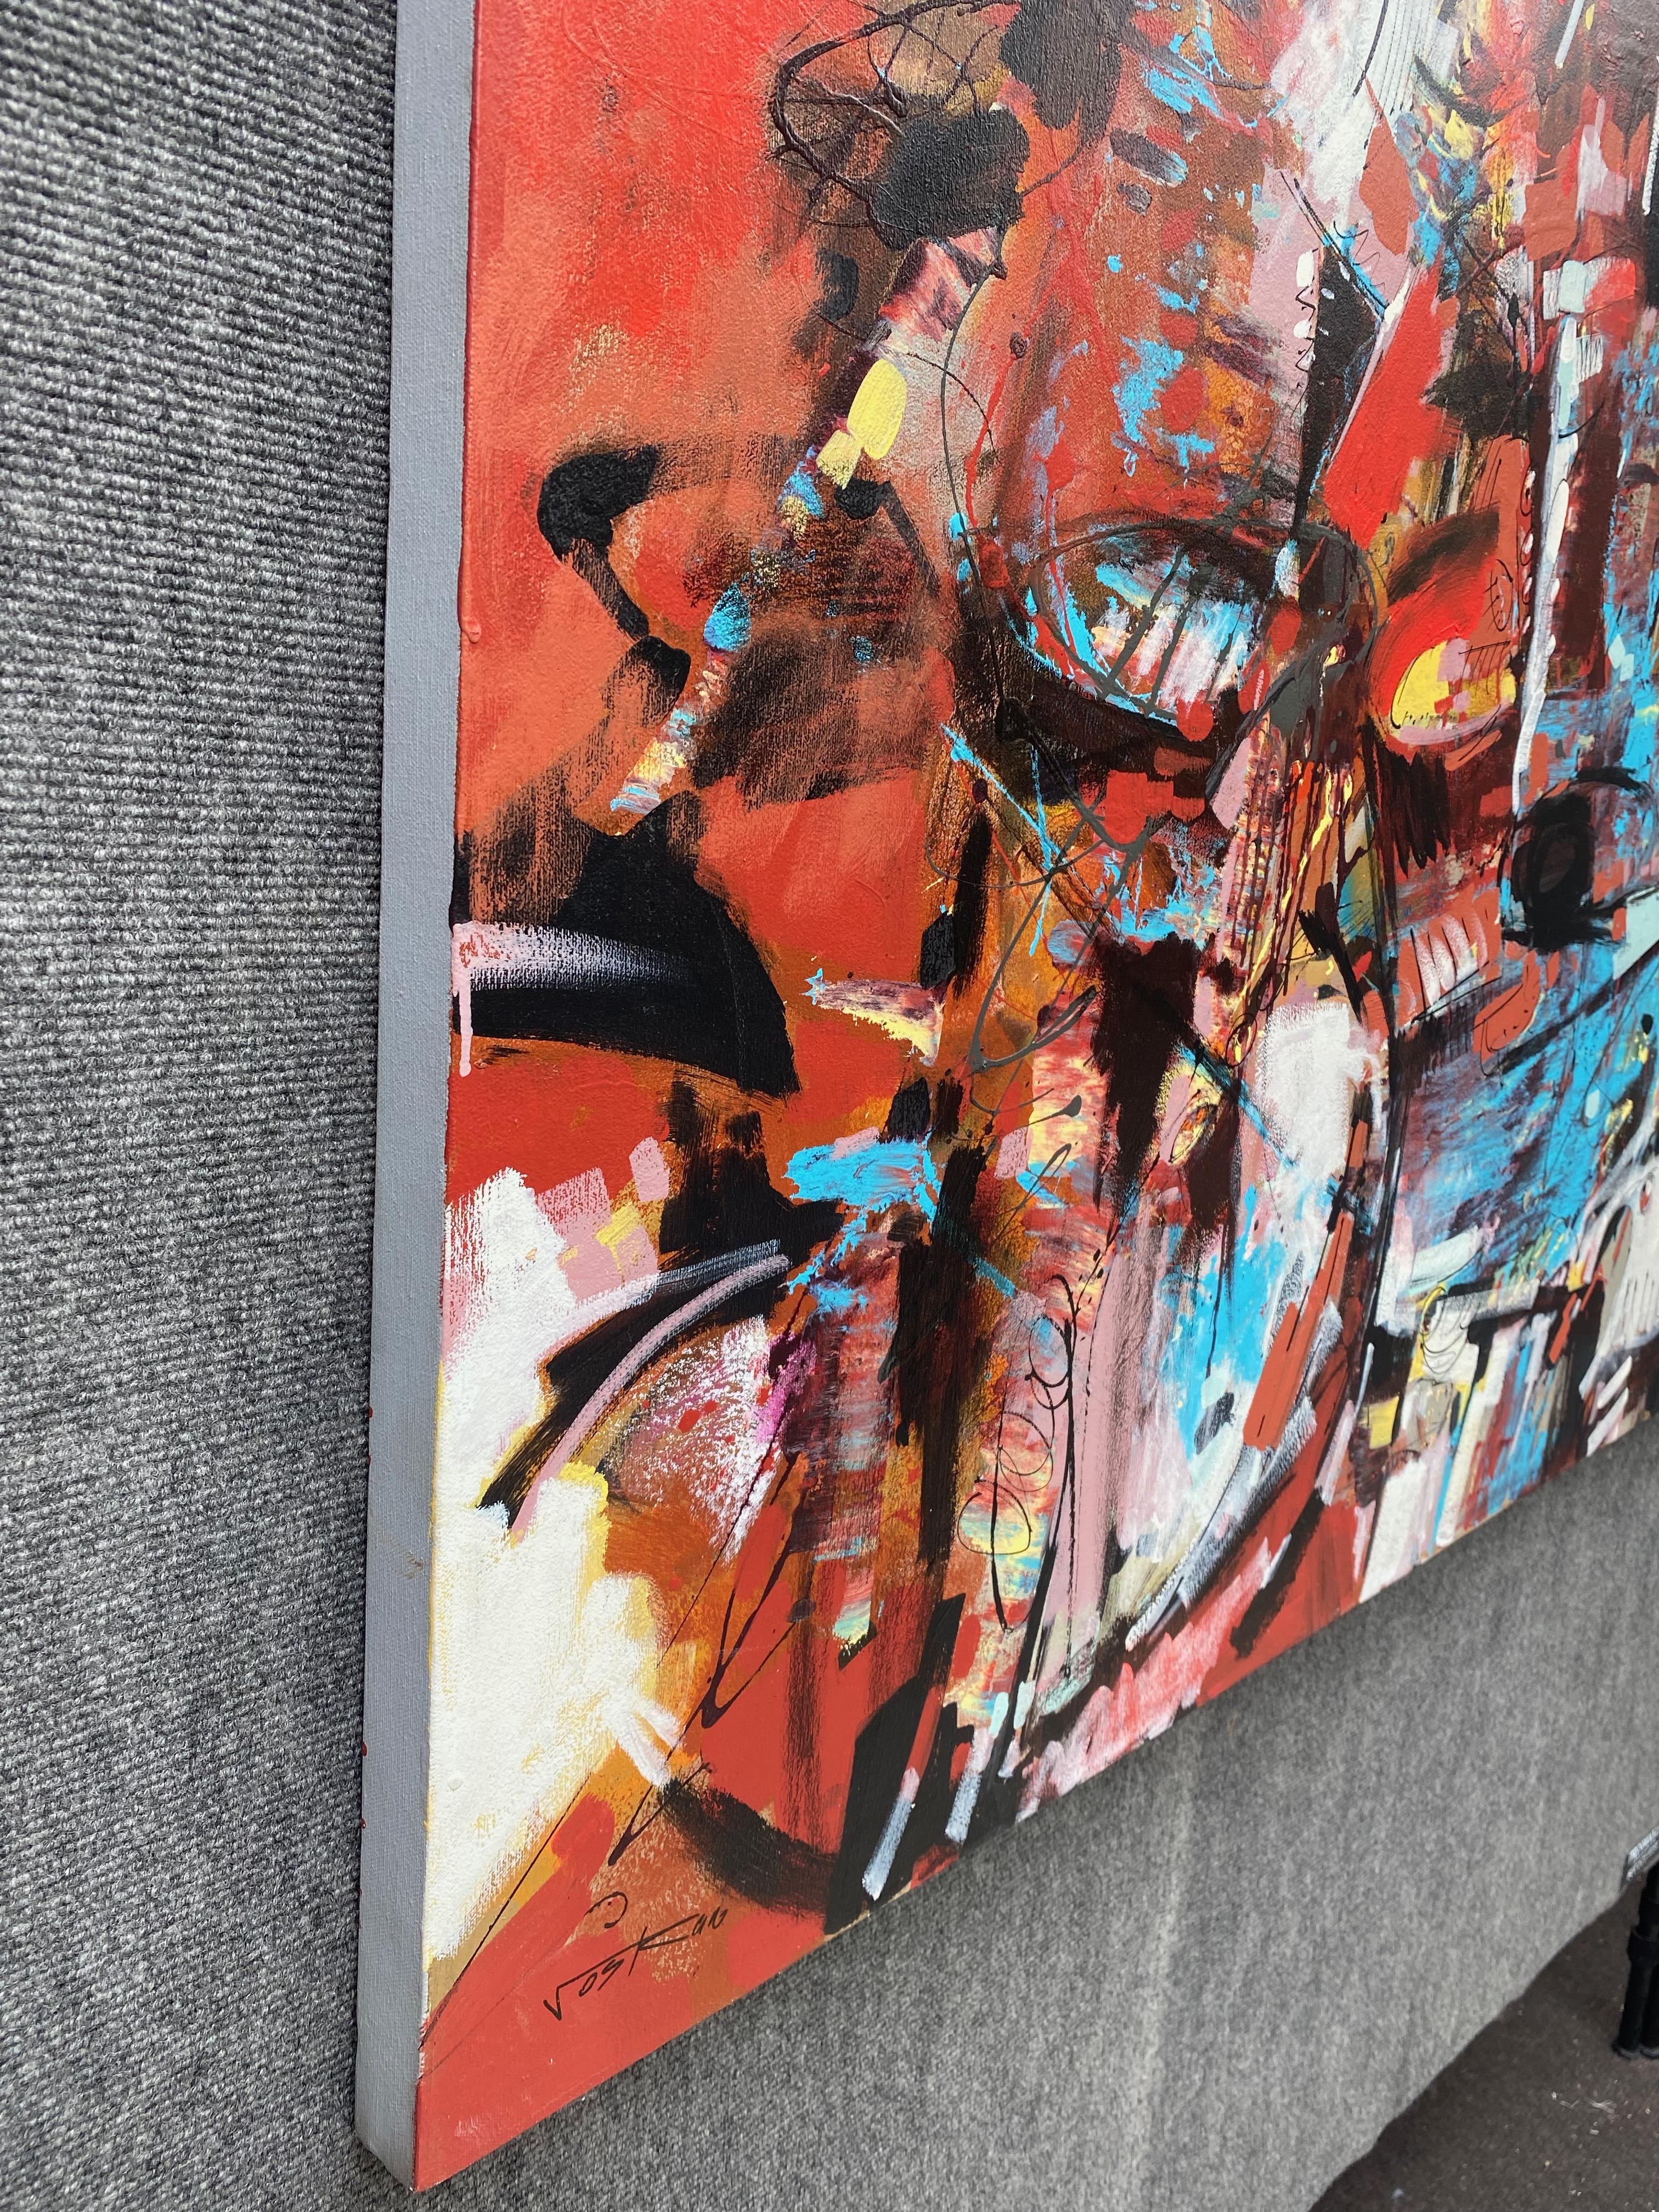 16
Artistics : Voskan Galstian 
Travail : Peinture acrylique originale, œuvre d'art faite à la main, unique en son genre 
Médium : Acrylique sur toile 
Année : 2022
Style : Art abstrait, 
Sujet : Symphonie d'automne,
Taille : 36